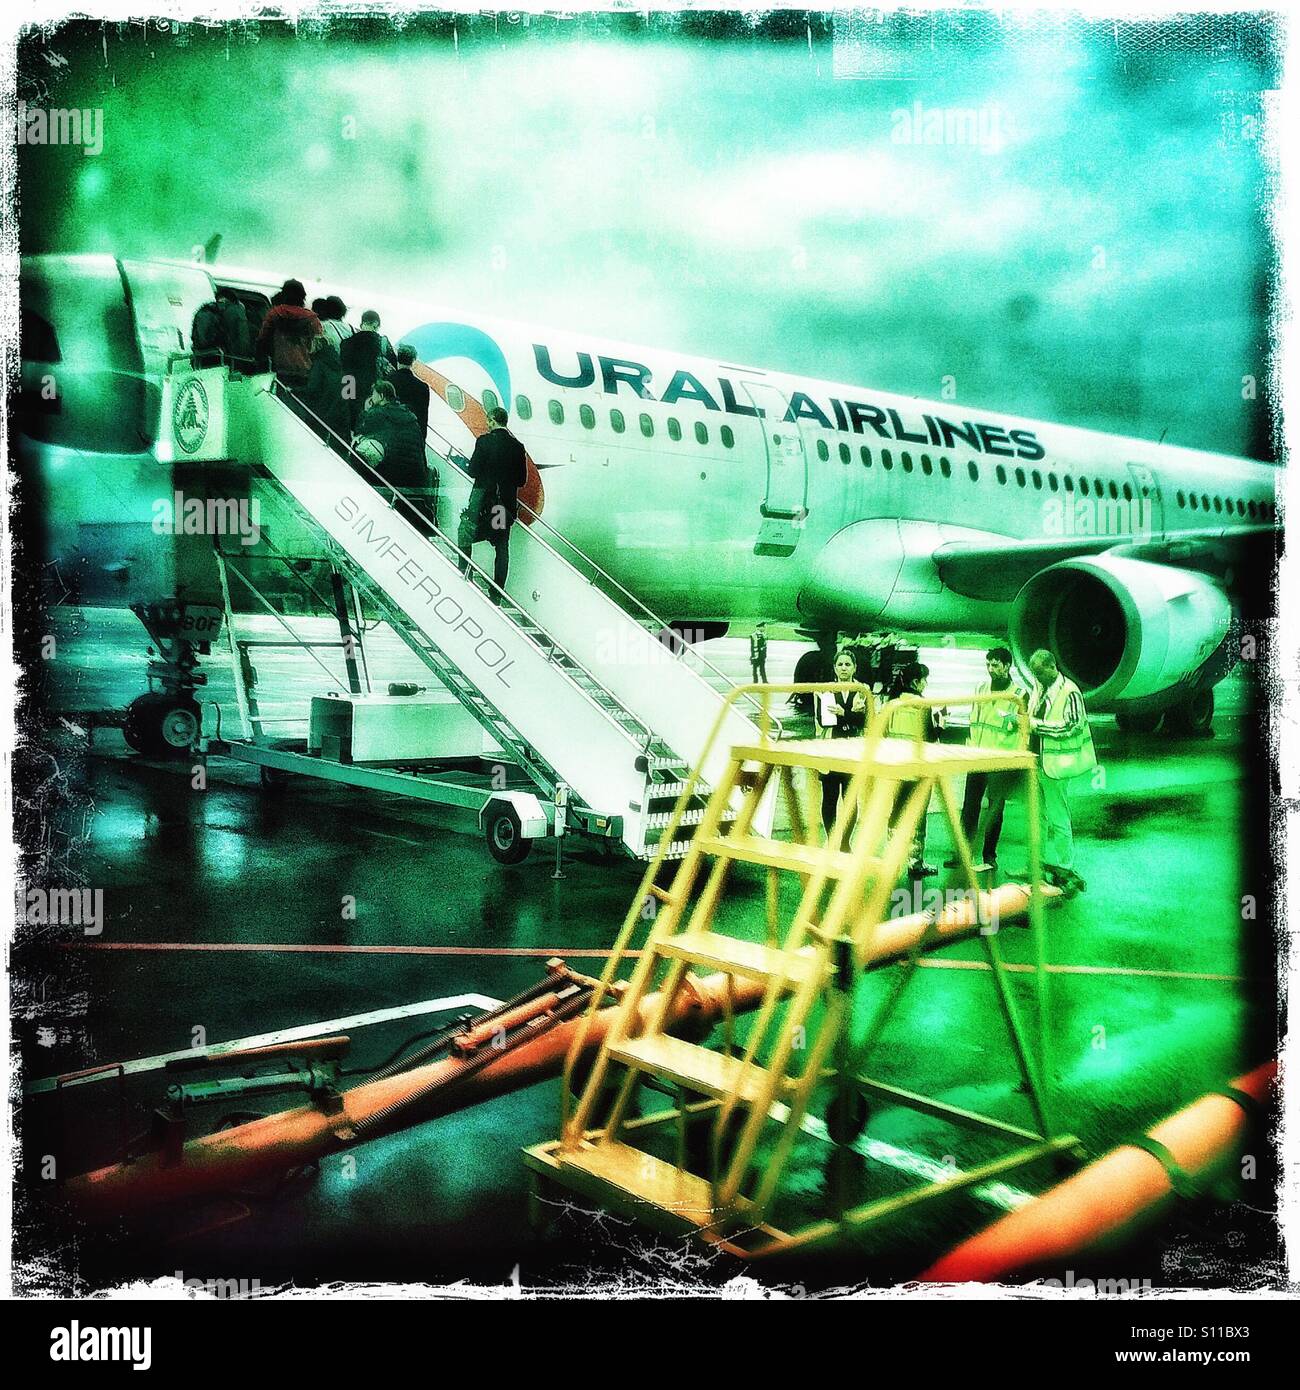 Les passagers d'un avion d'Ural Airlines, l'aéroport de Simferopol, en Crimée Banque D'Images